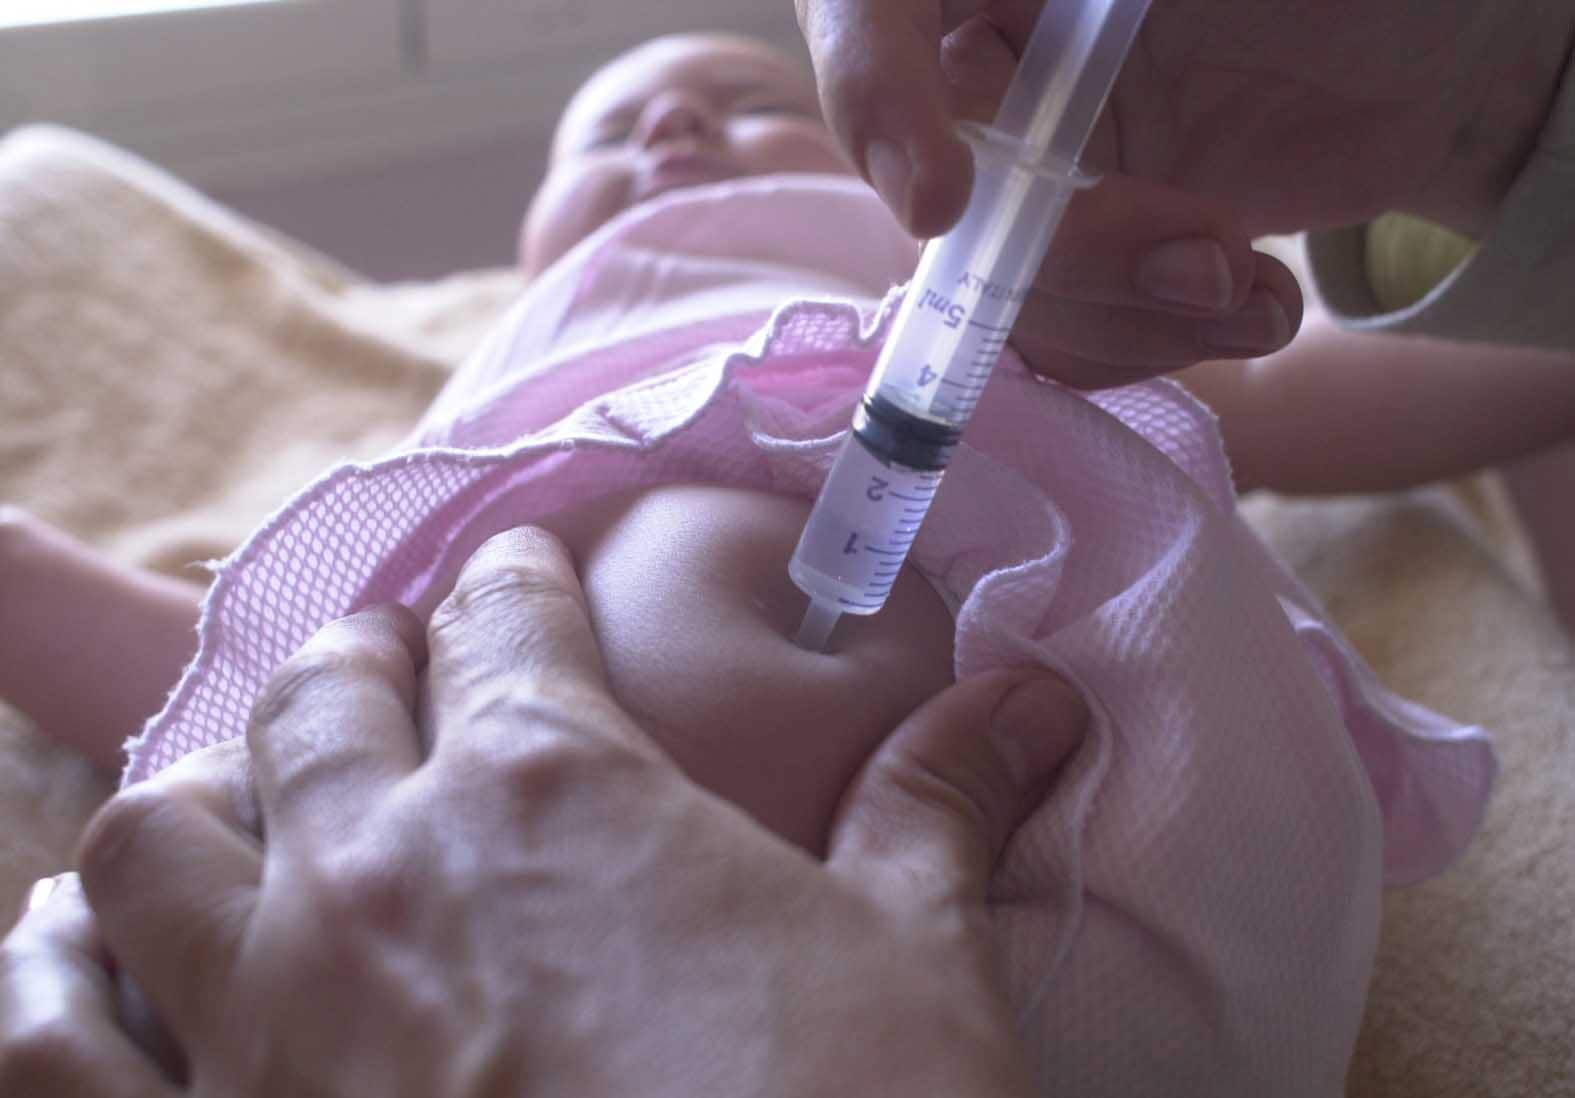 Vacunación de un bebé.